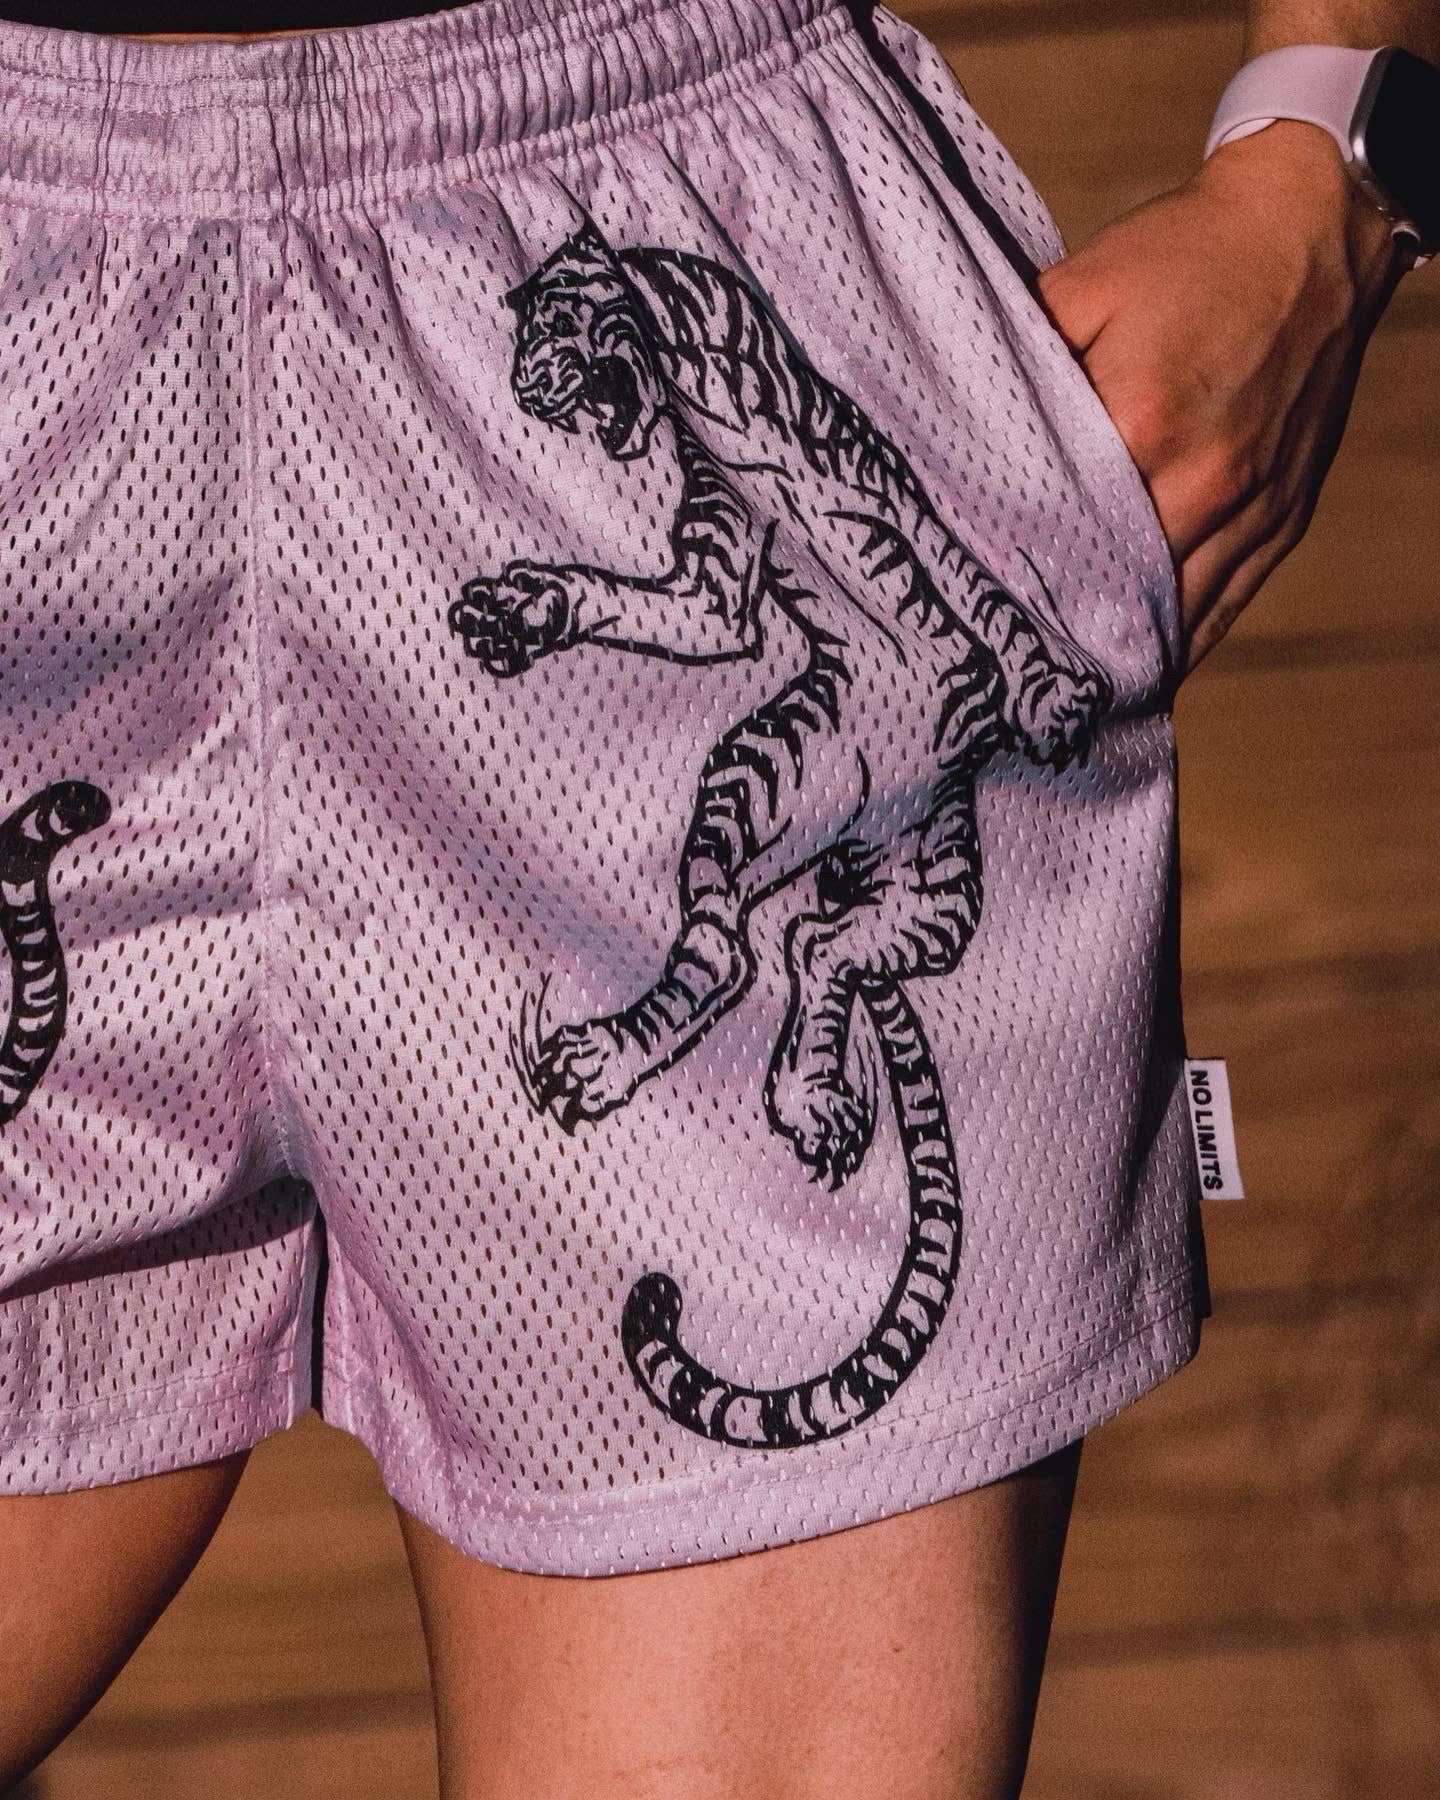 No Limits Shorts - Lilac Tigers